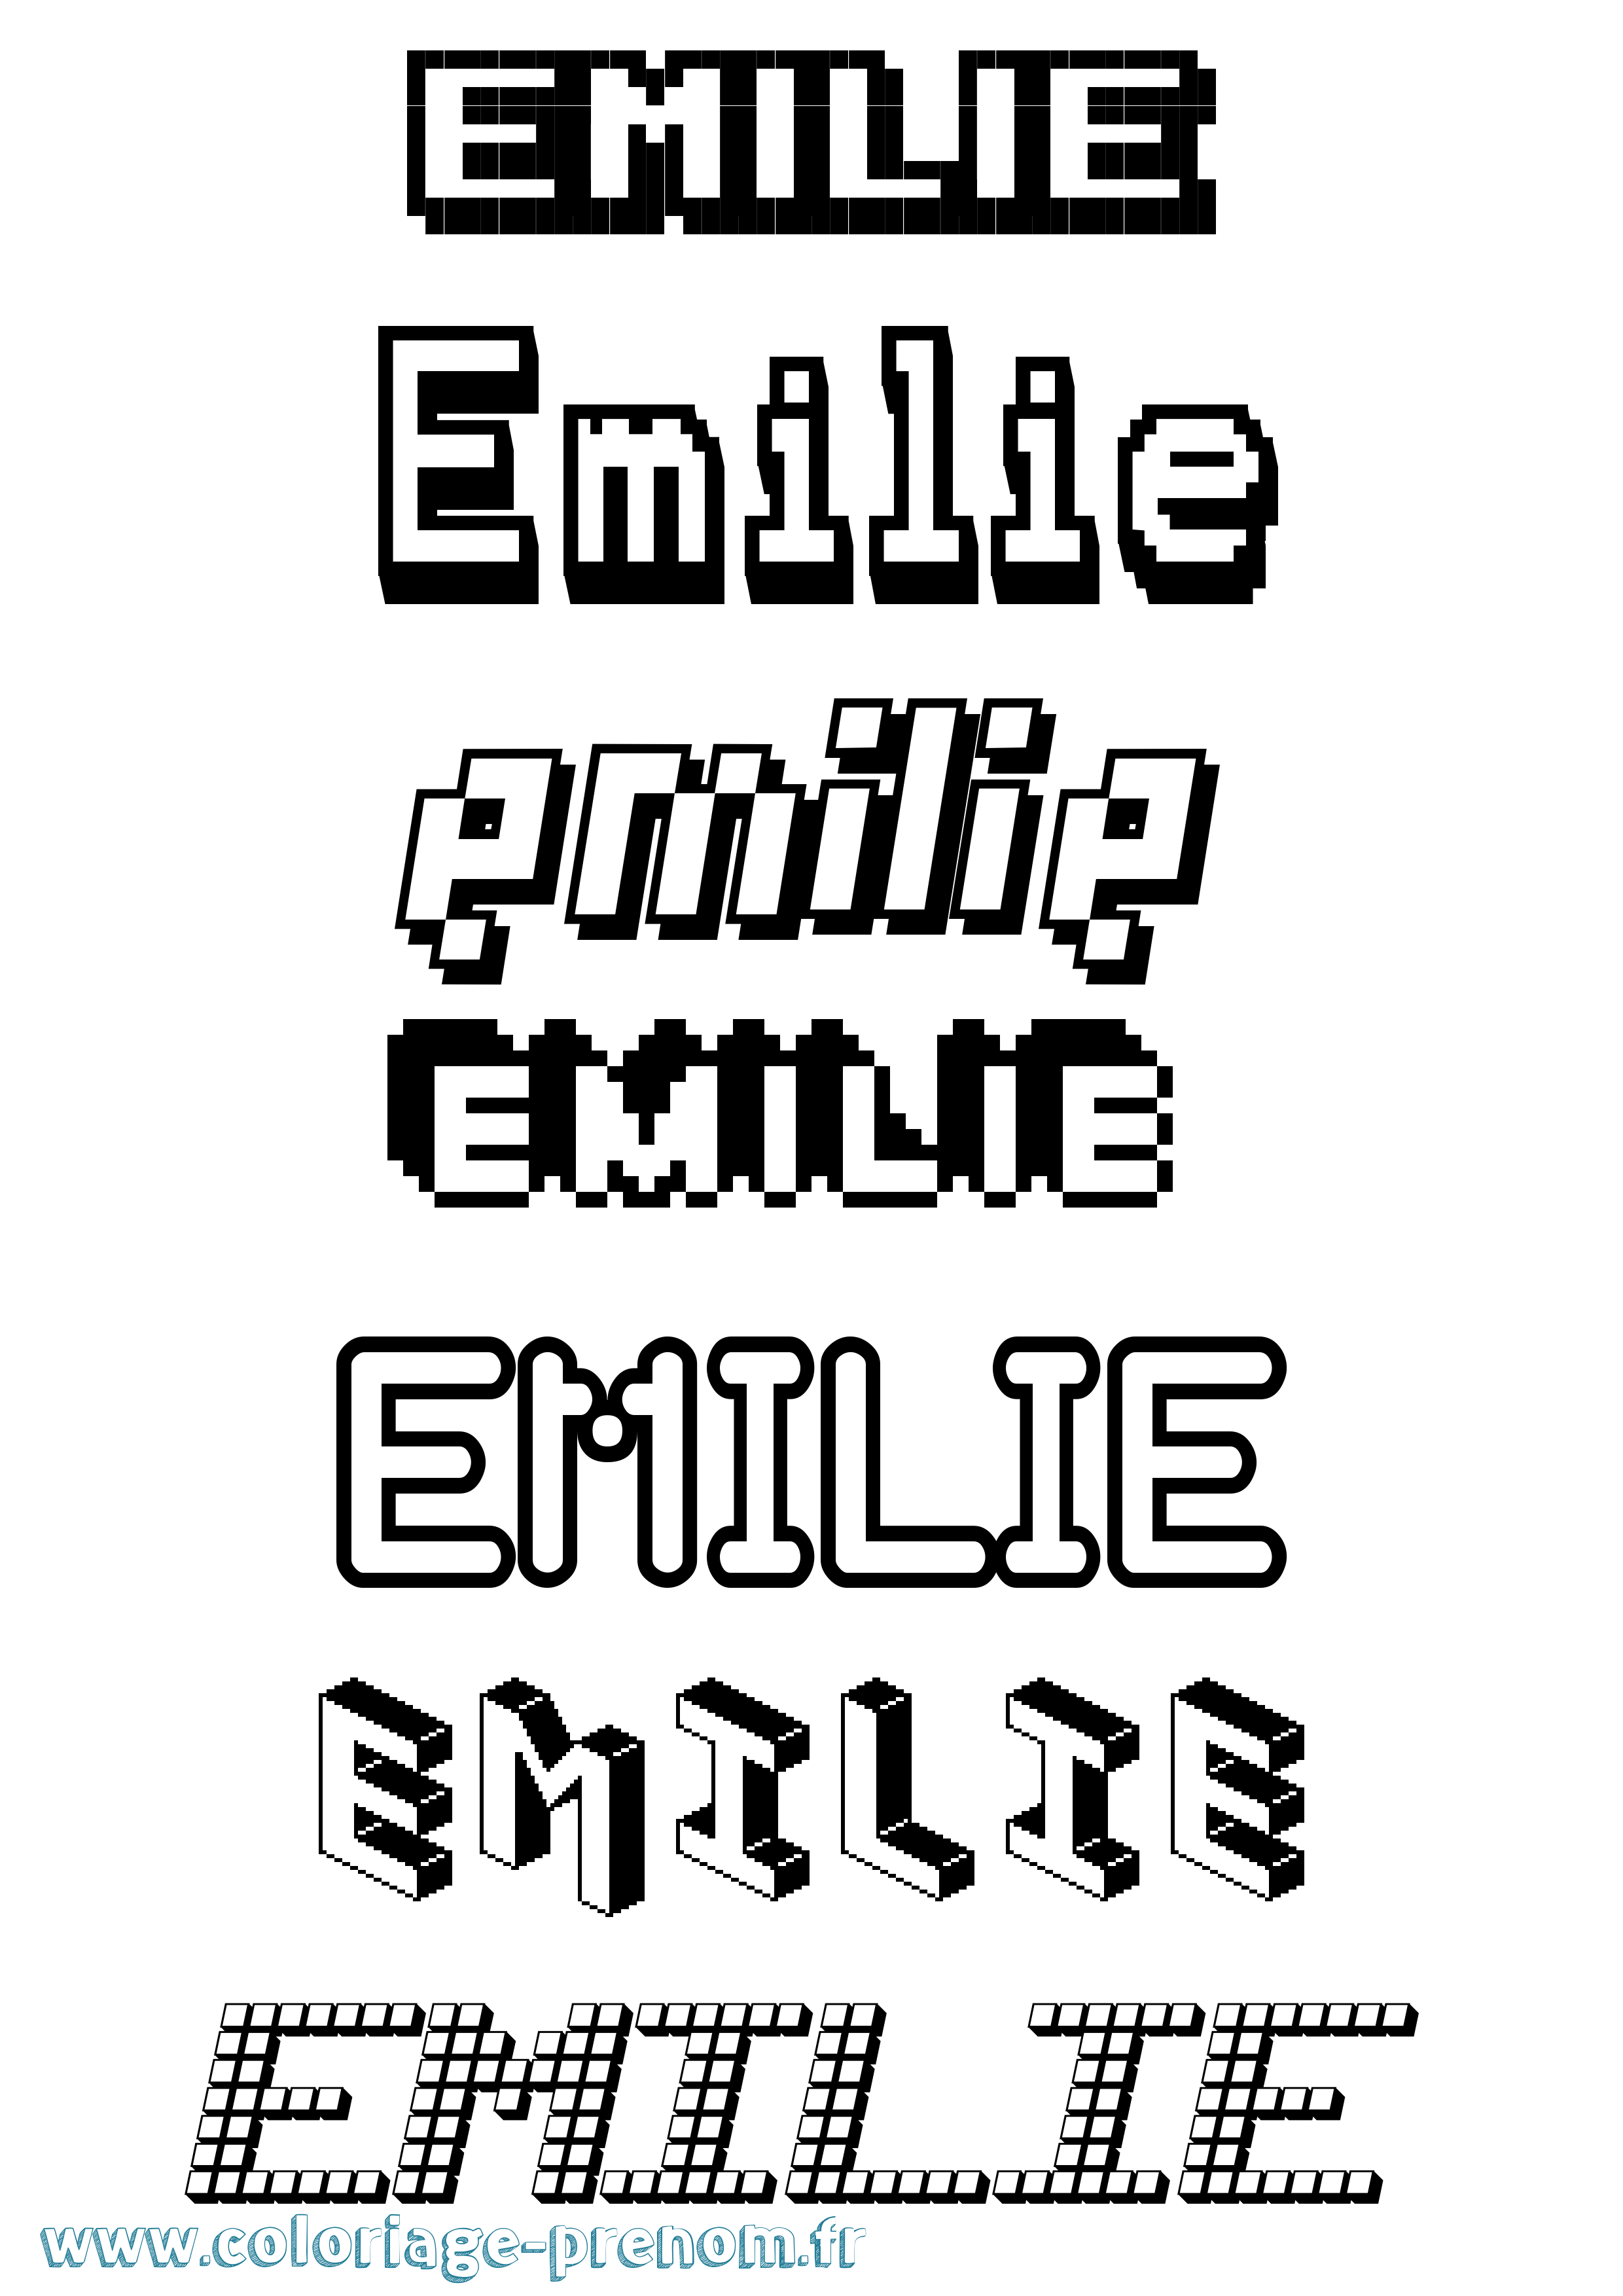 Coloriage prénom Emilie Pixel